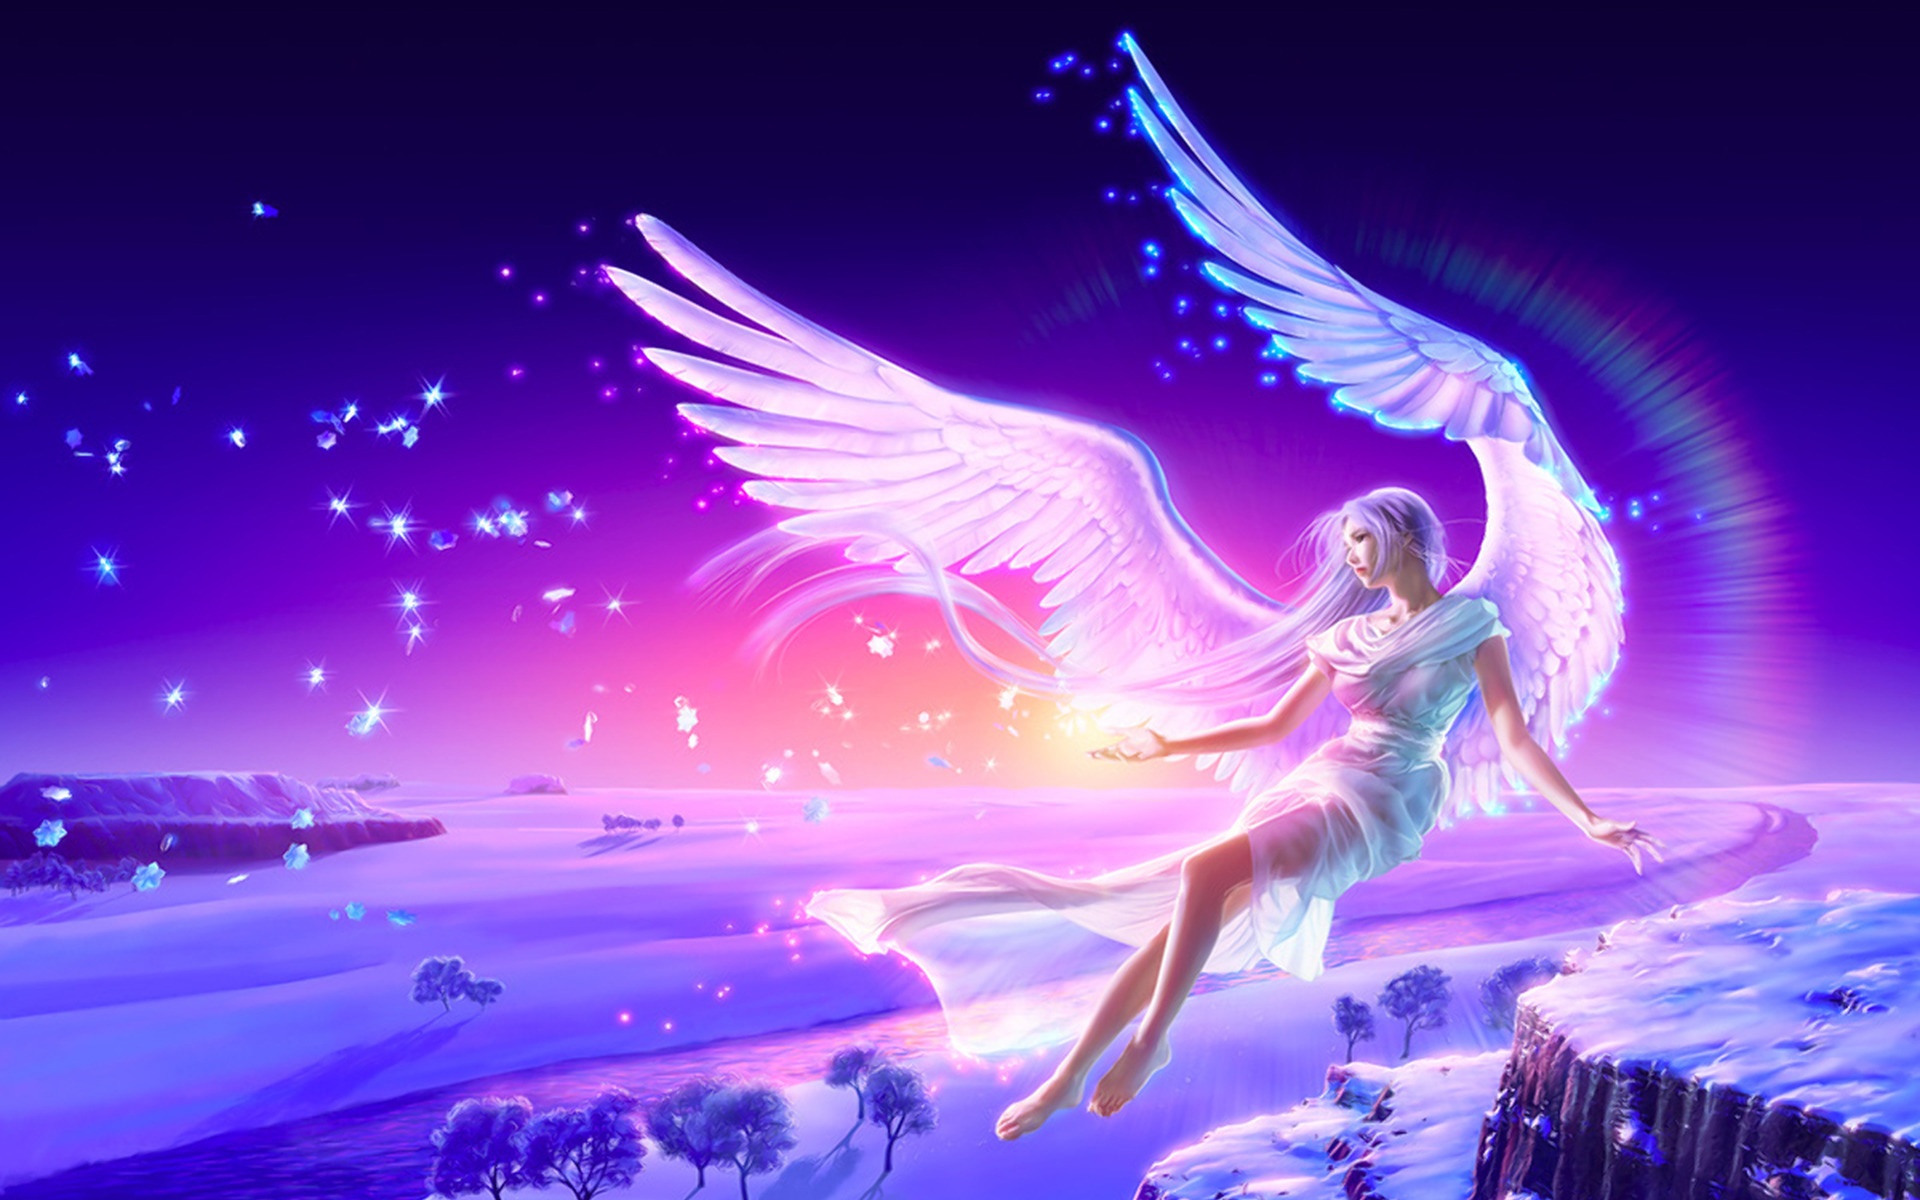 Anime Angel wings HD Image | PixelsTalk.Net